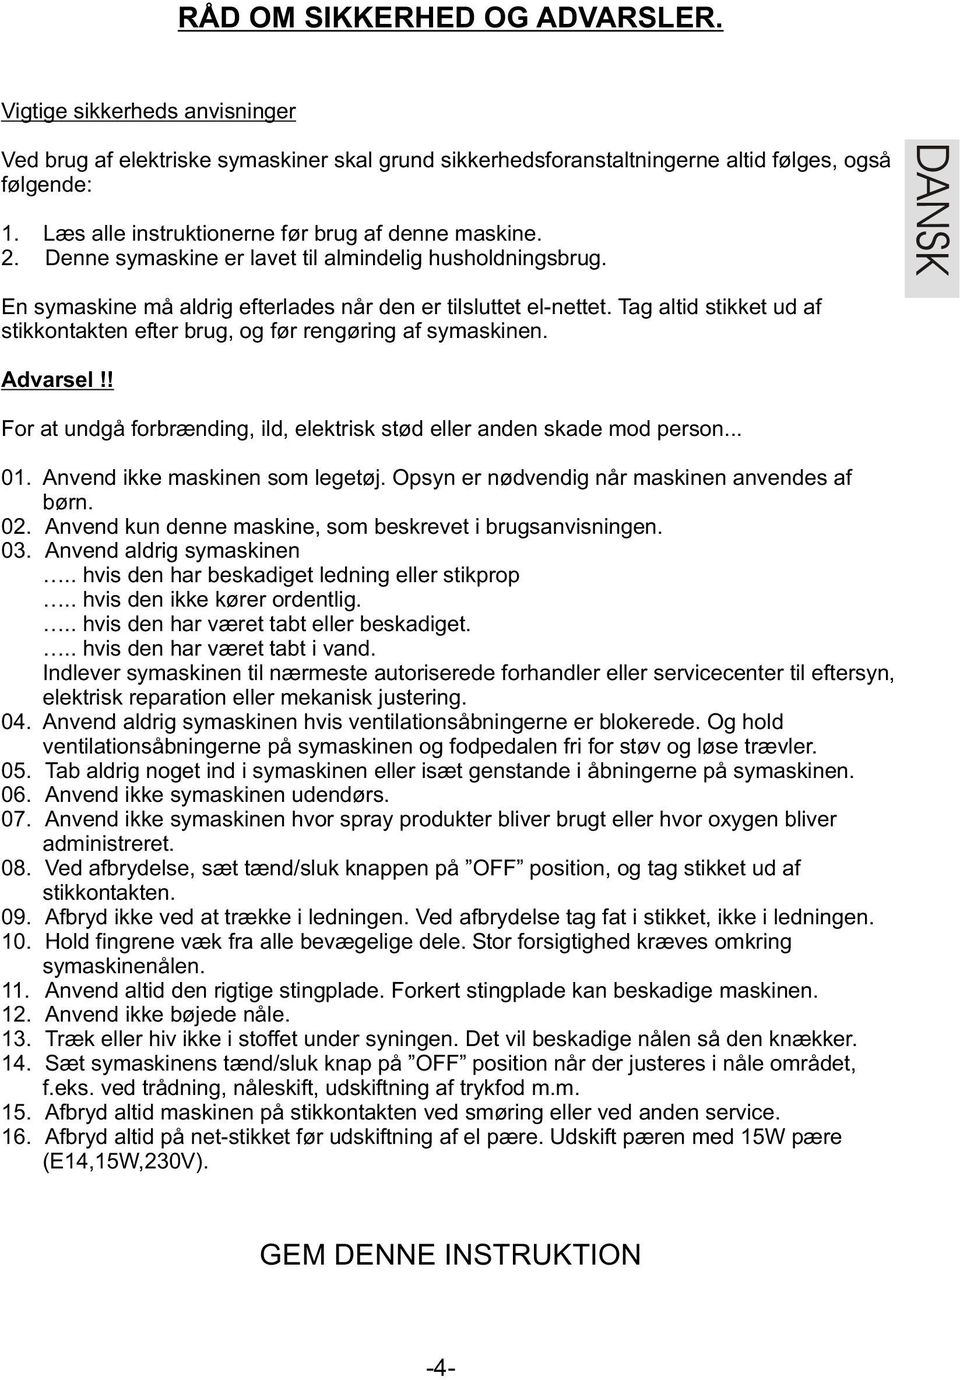 Brugsvejledning. Instruction manual. Eva Royal PDF Free Download